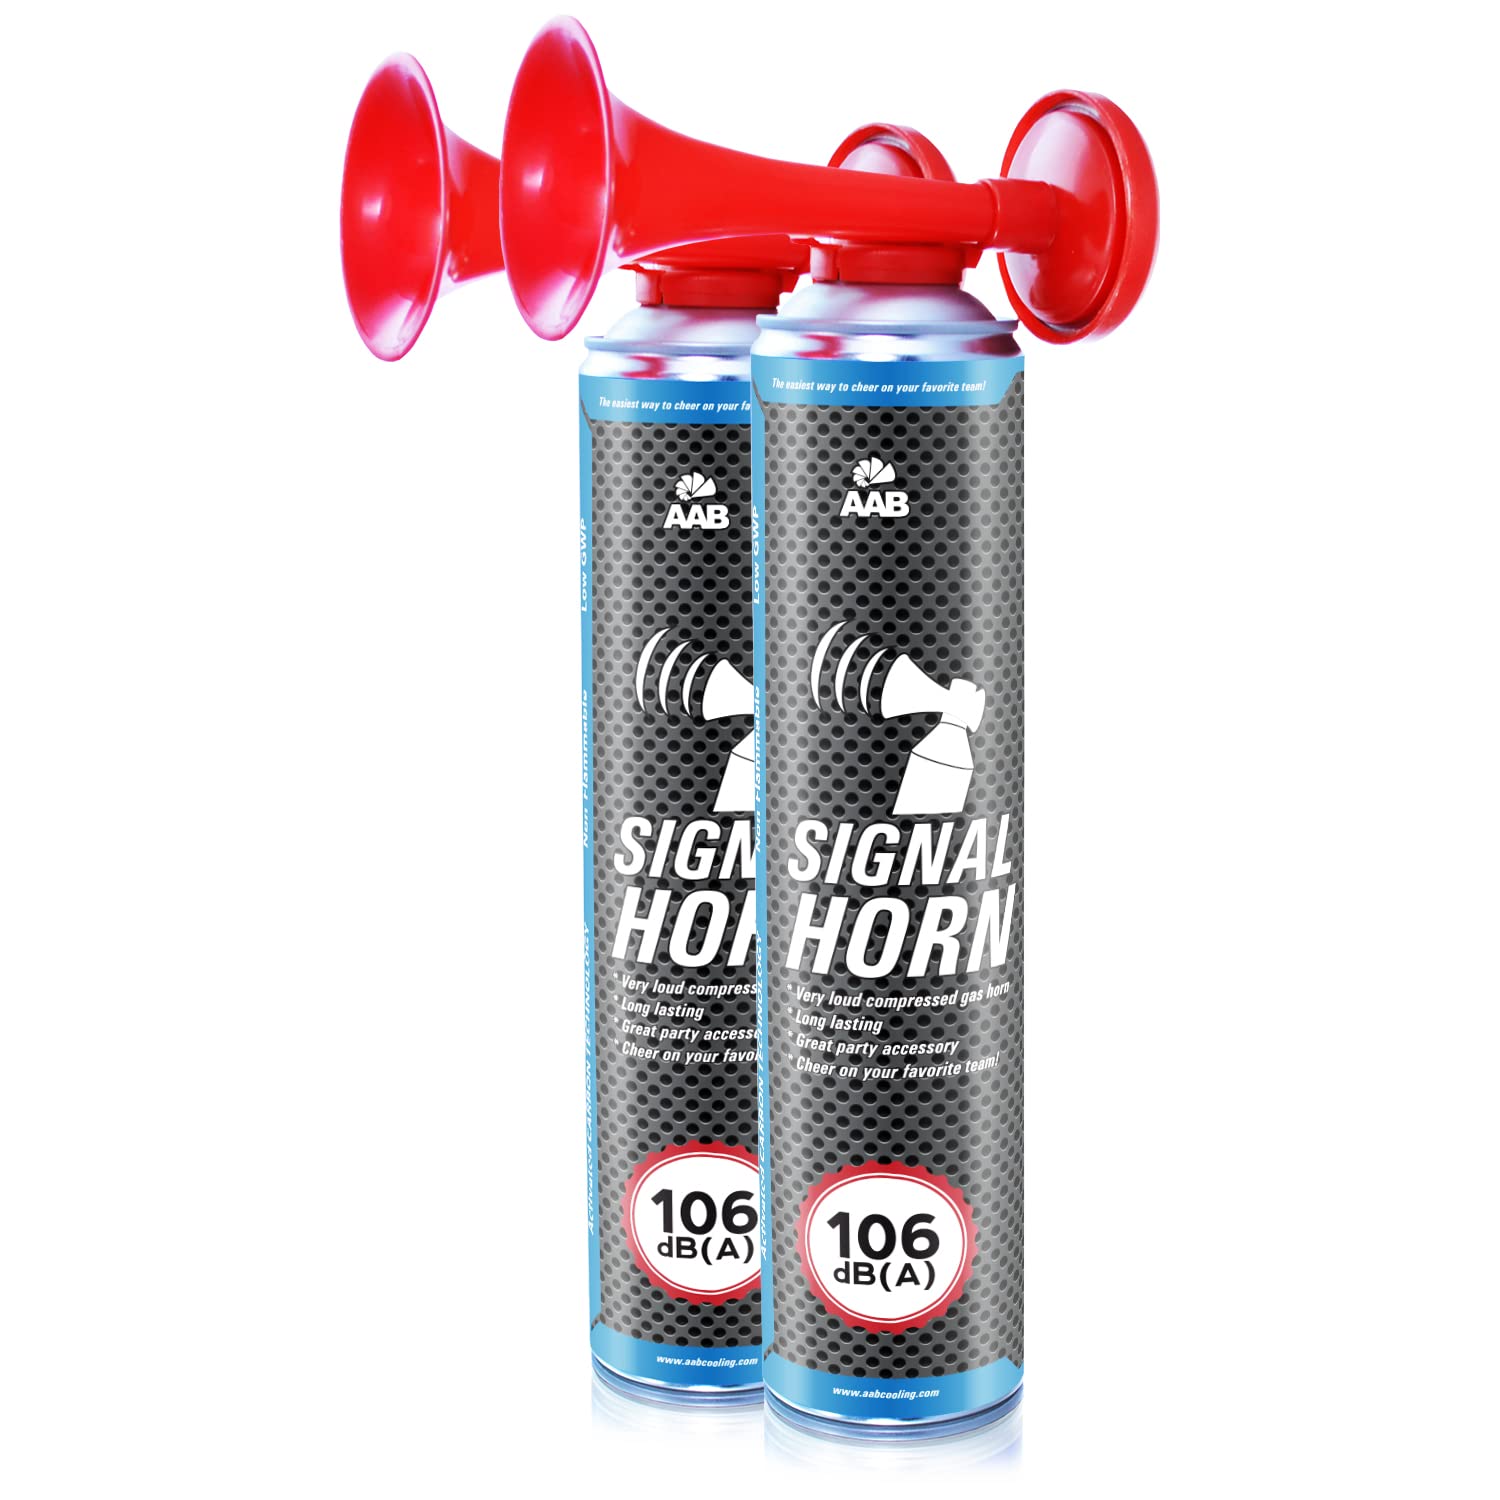 2 x AAB Signal Horn – Laut Nebelhorn 106 dB(A) Mit Nicht Brennbarem Gas, Bis Zu 320 Kurze Pieptöne, Fanfare, Fußball Airhorn, Gasfanfare, Pressluft Luftdruck Tröte, Drucklufthupe von AABCOOLING